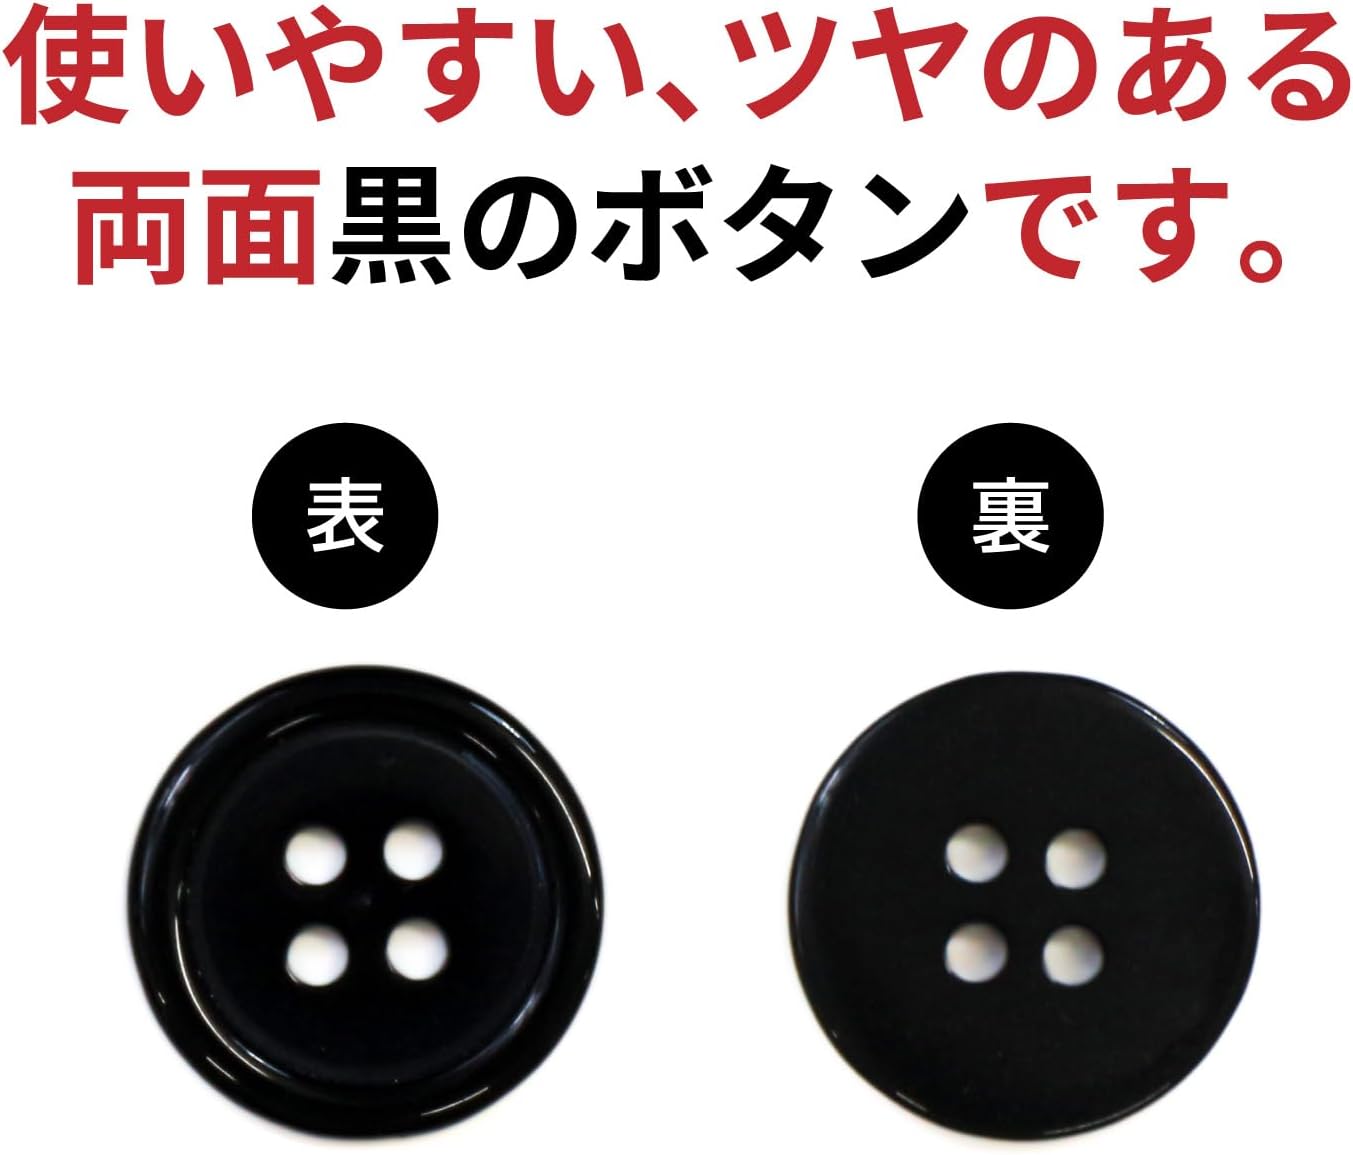 【品質保証新品】【ト28】15 ボタン 1個 40円 和洋裁材料